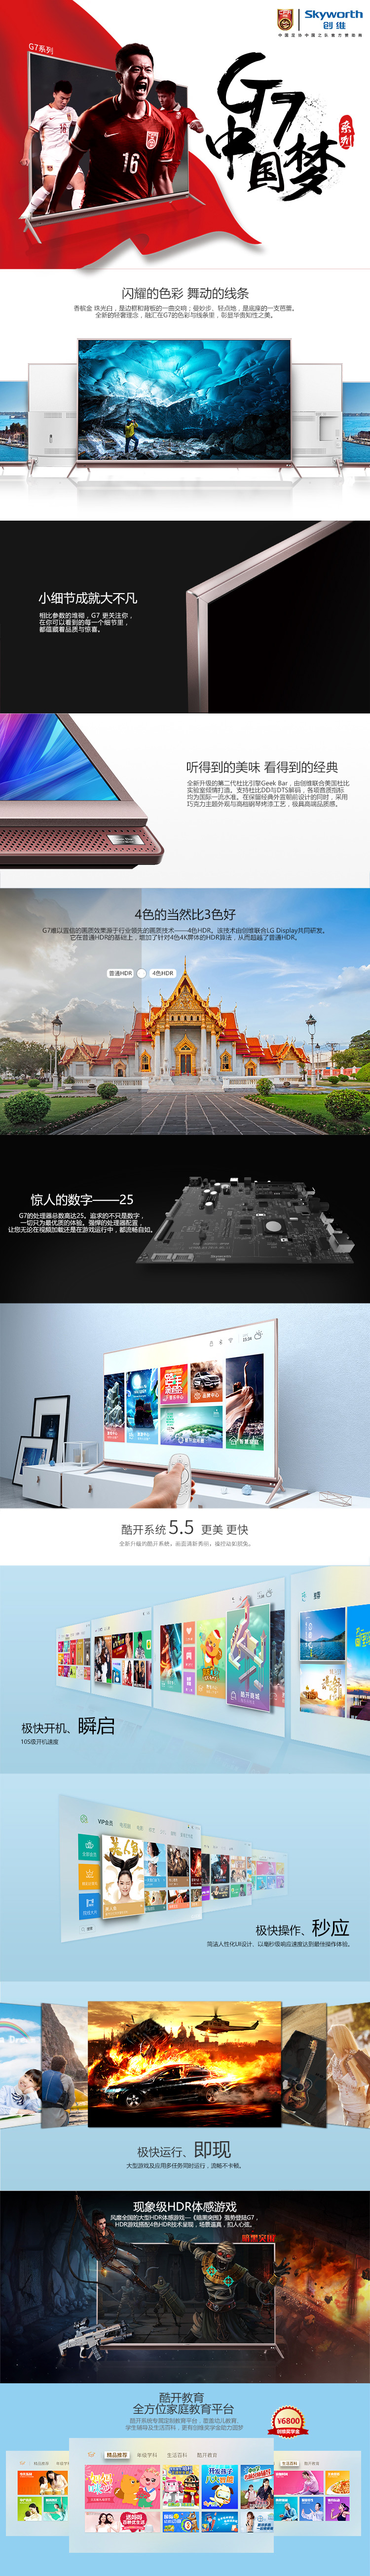 创维/SKYWORTH 60G7 4K超高清彩电HDR 智能网络液晶平板电视(玫瑰金)